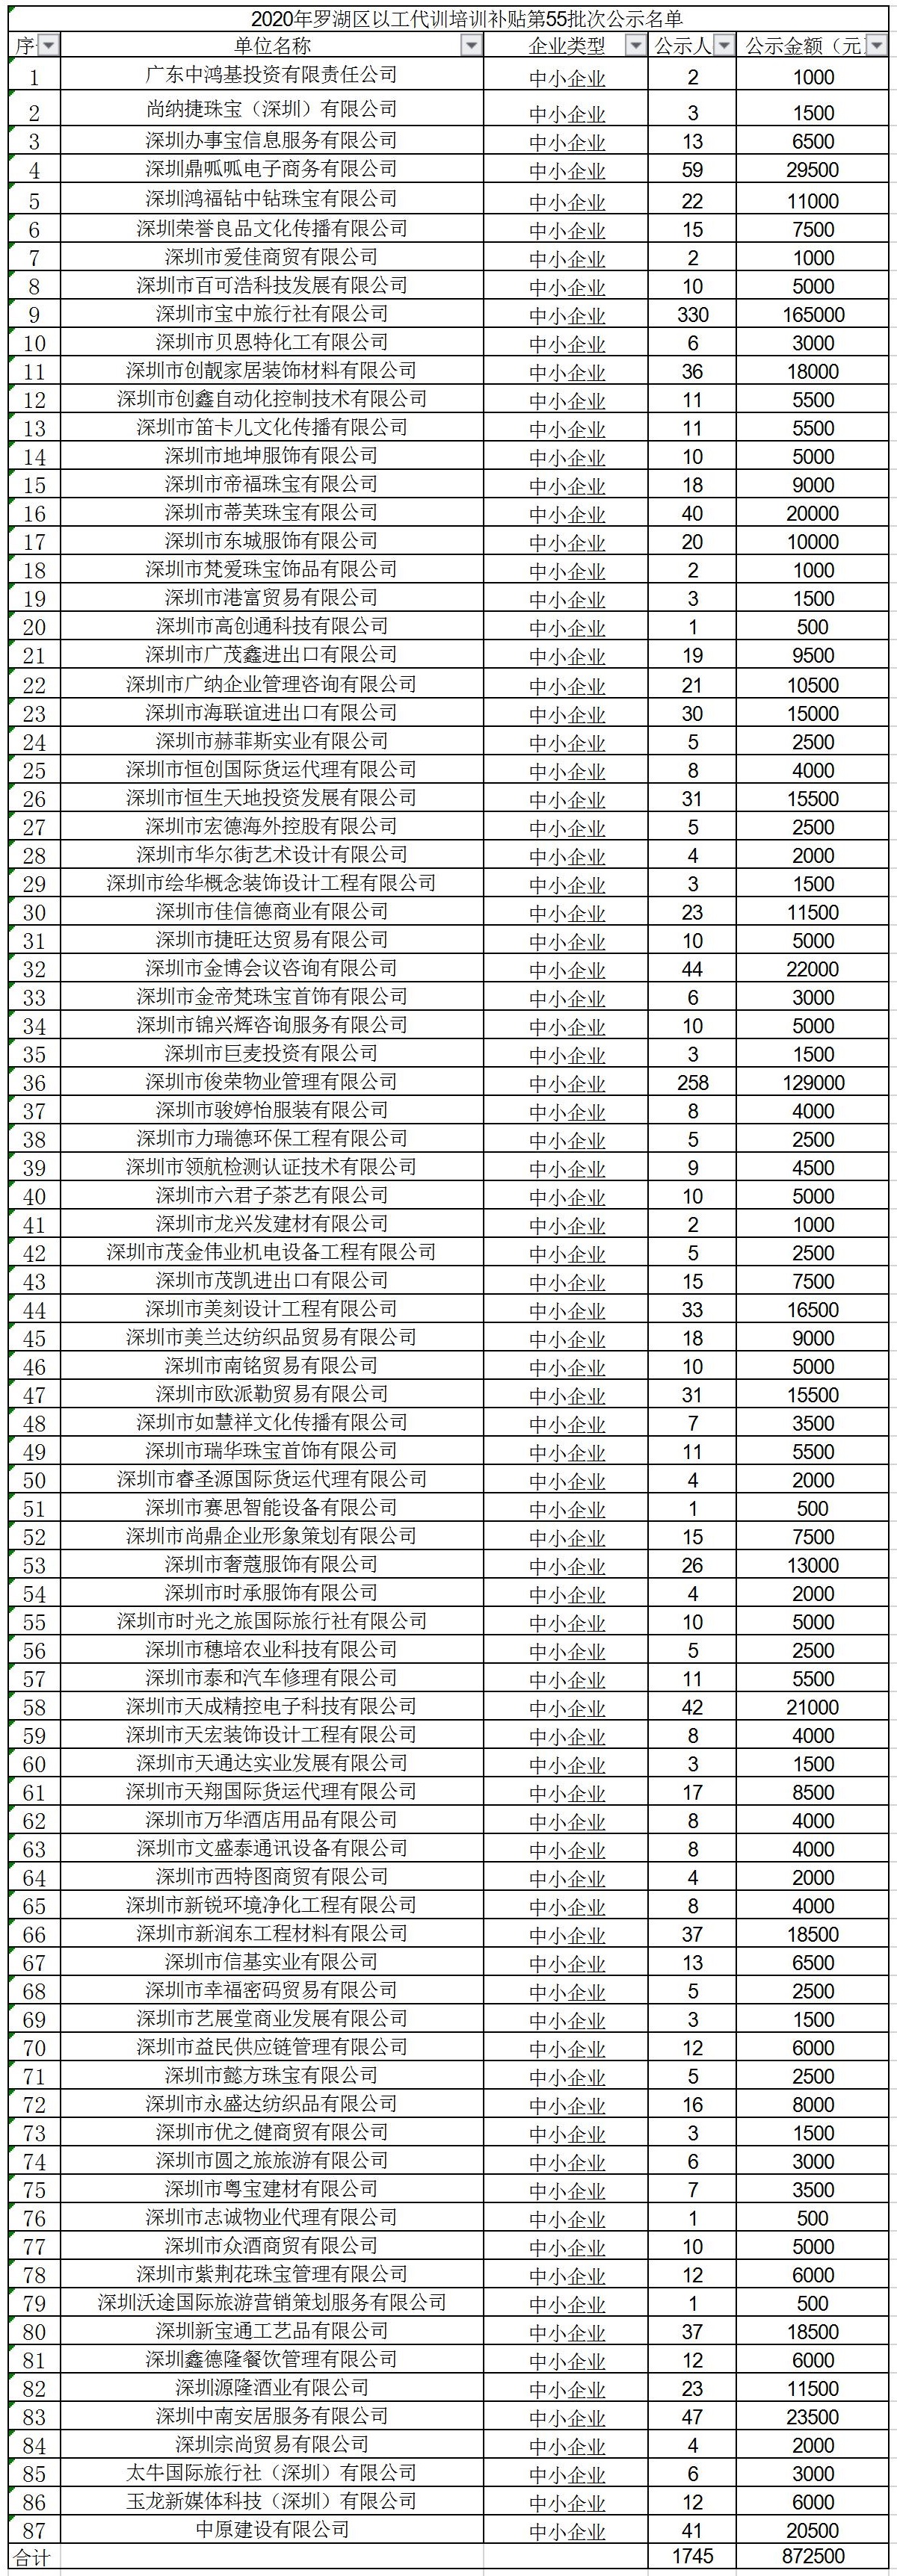 2020年深圳市罗湖区以工代训培训补贴第55批次公示名单.jpg